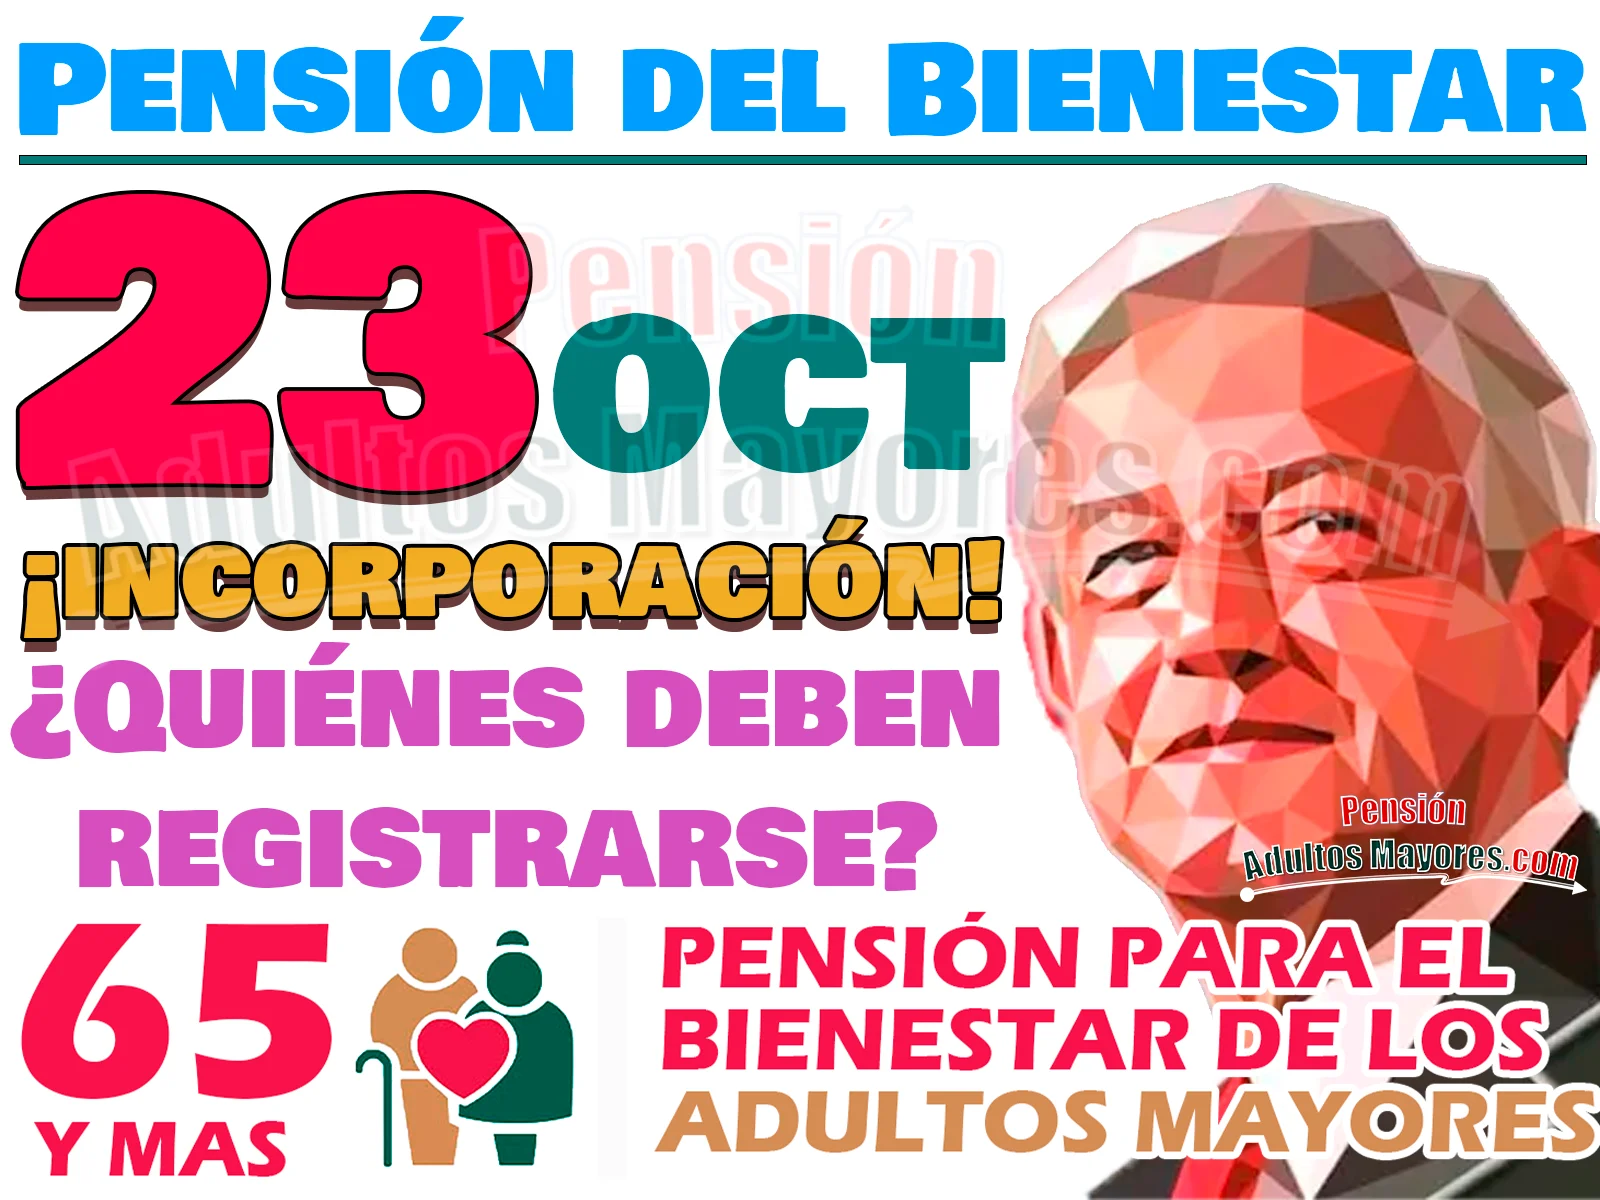 Lista de Personas Adultas Mayores que deberán registrarse a la Pensión del Bienestar este Lunes 23 de Octubre